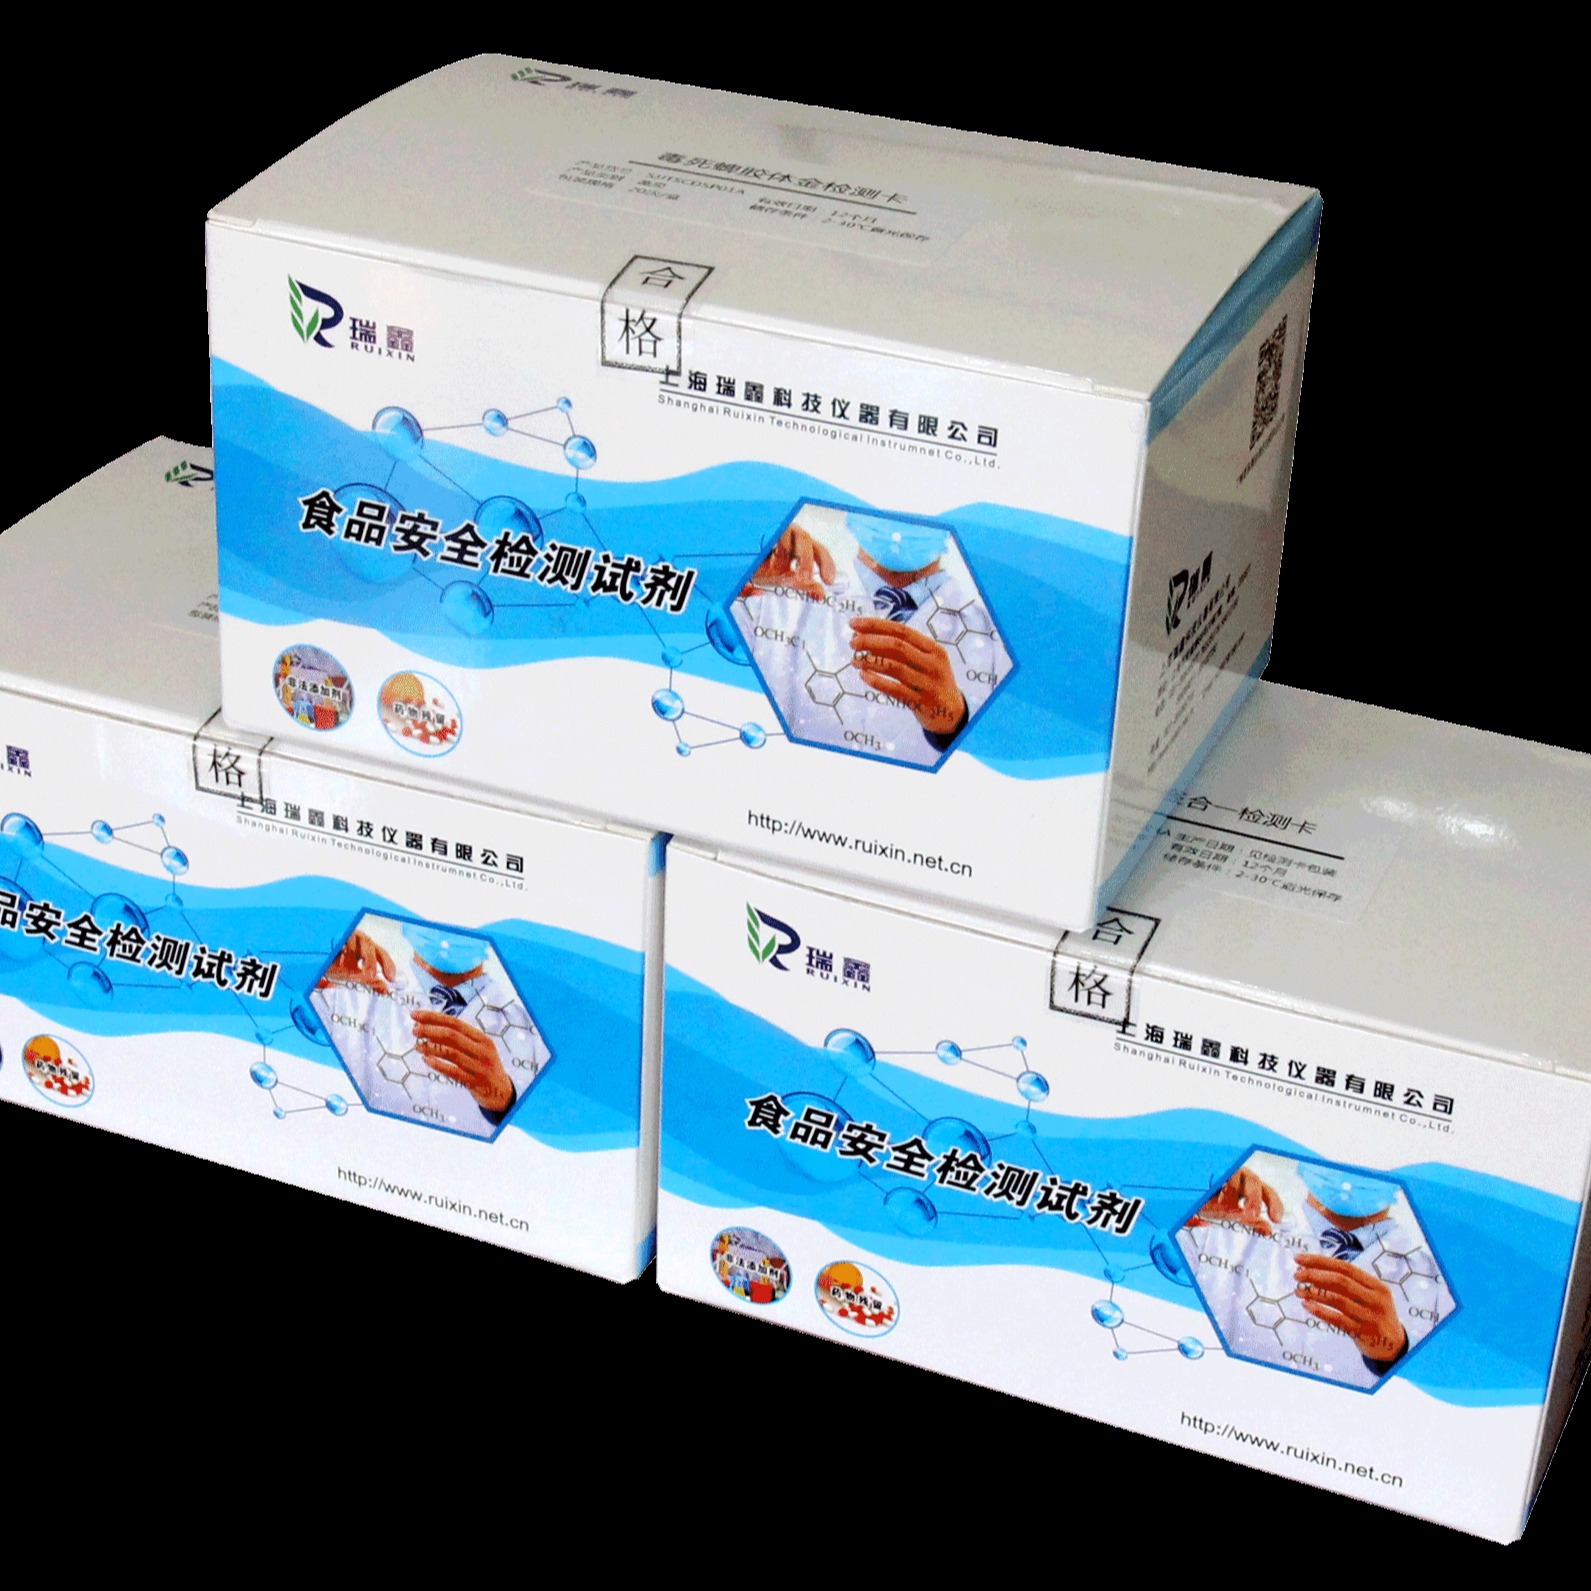 上海瑞鑫 厂家直销 木耳掺假检测试剂  木耳检测试剂盒 木耳镁盐硫酸盐检测图片